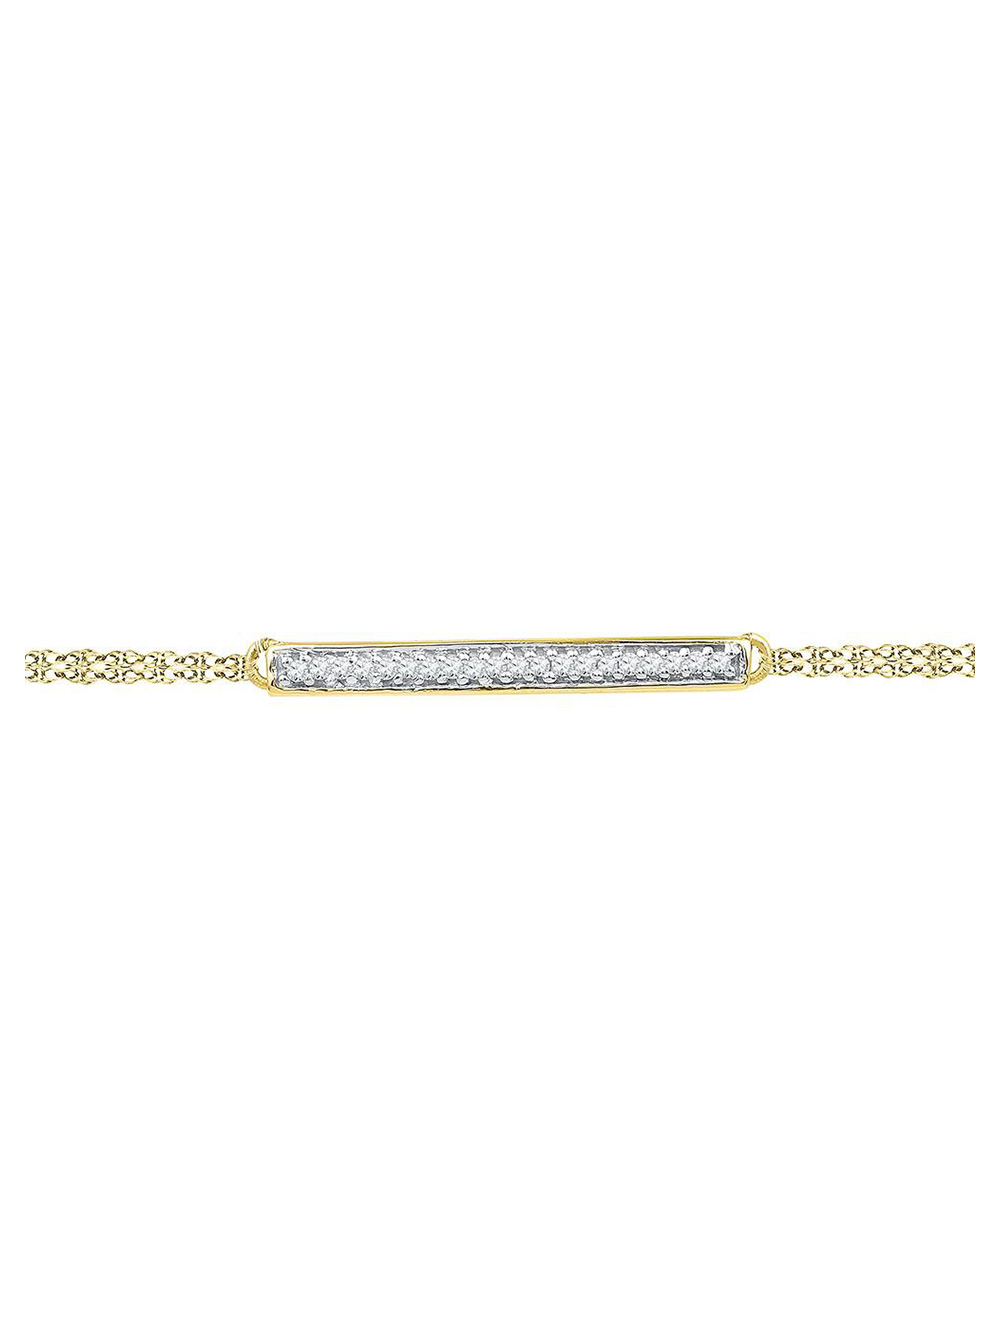 FB JEWELS Solid Adjustable Cord Metal 1/2 Inch Tall Bracelet 